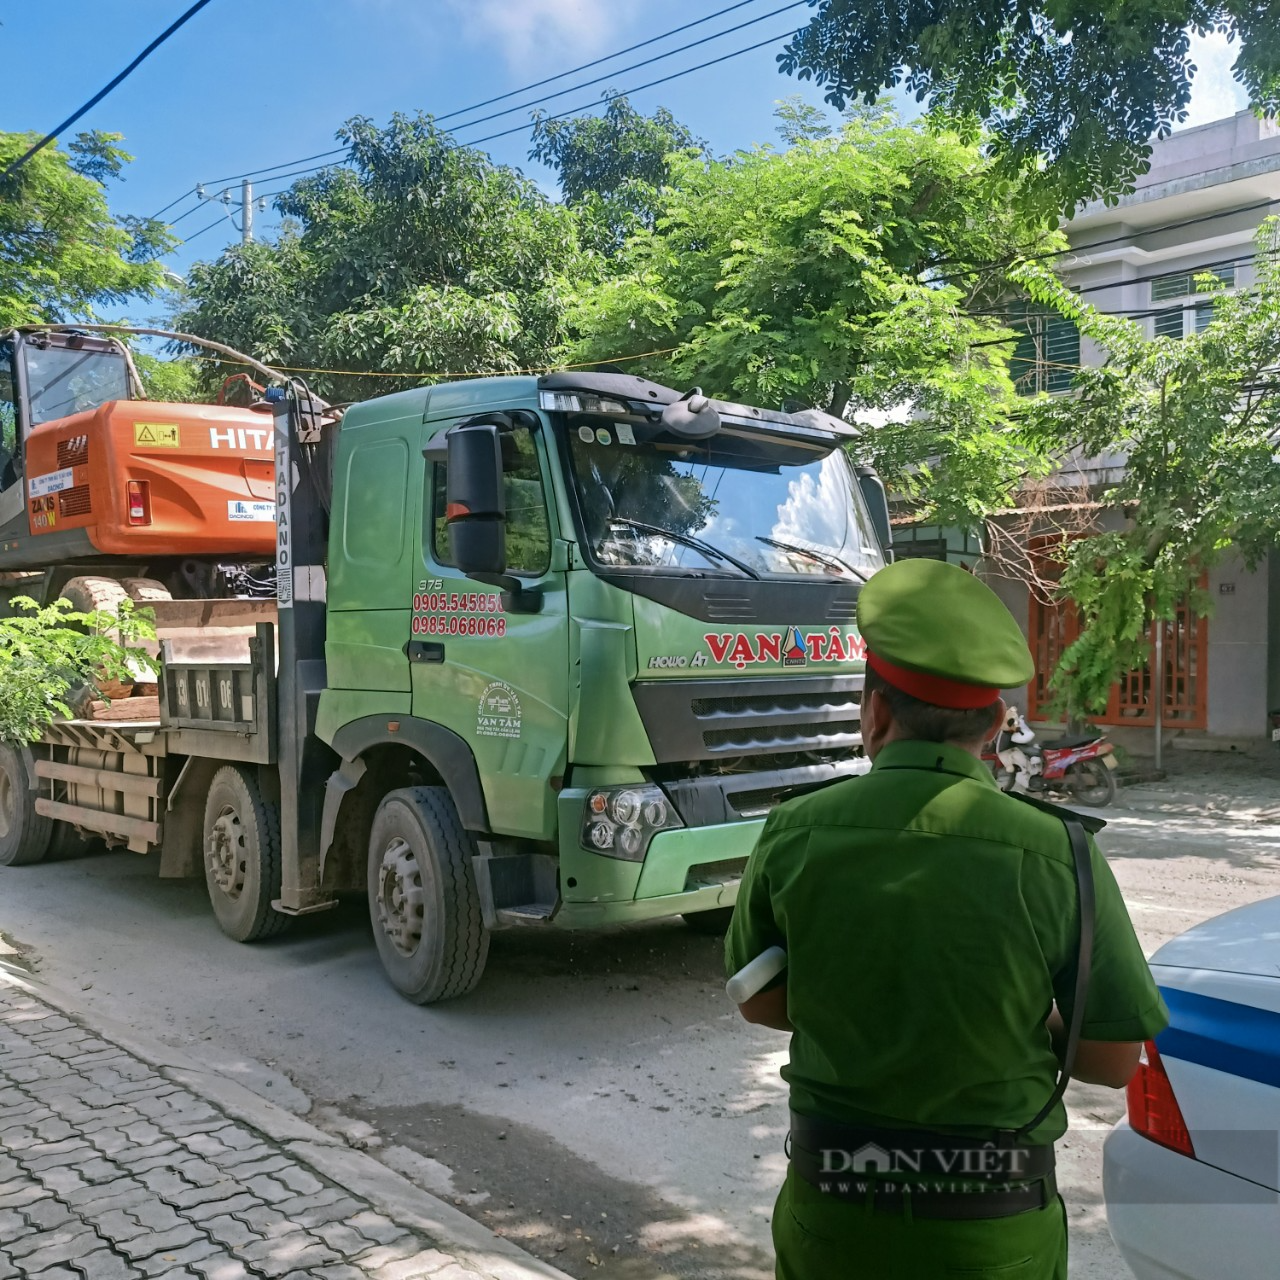 Hàng chục trường hợp xe quá tải bị xử lý sau phản ánh của Dân Việt - Ảnh 1.